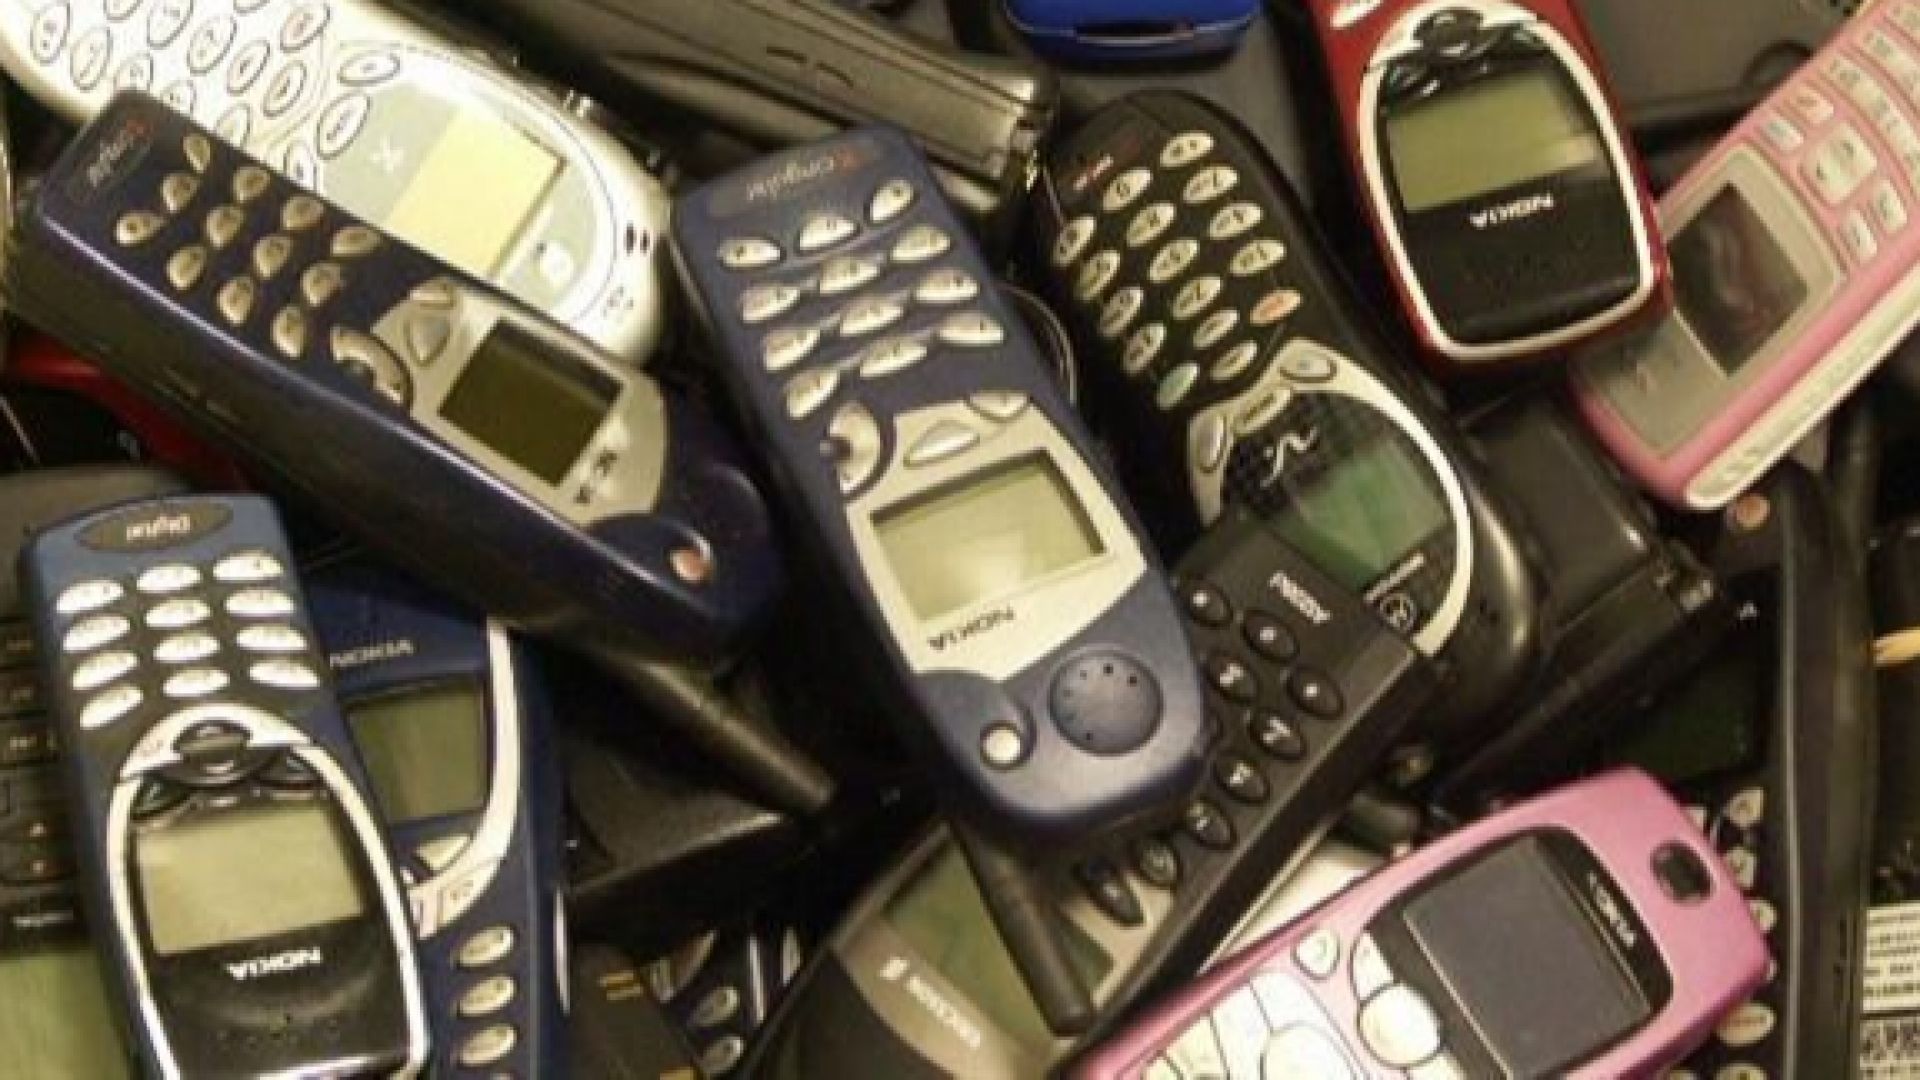 Митничари са задържали повече от 6000 мобилни телефона, зарядни устройства